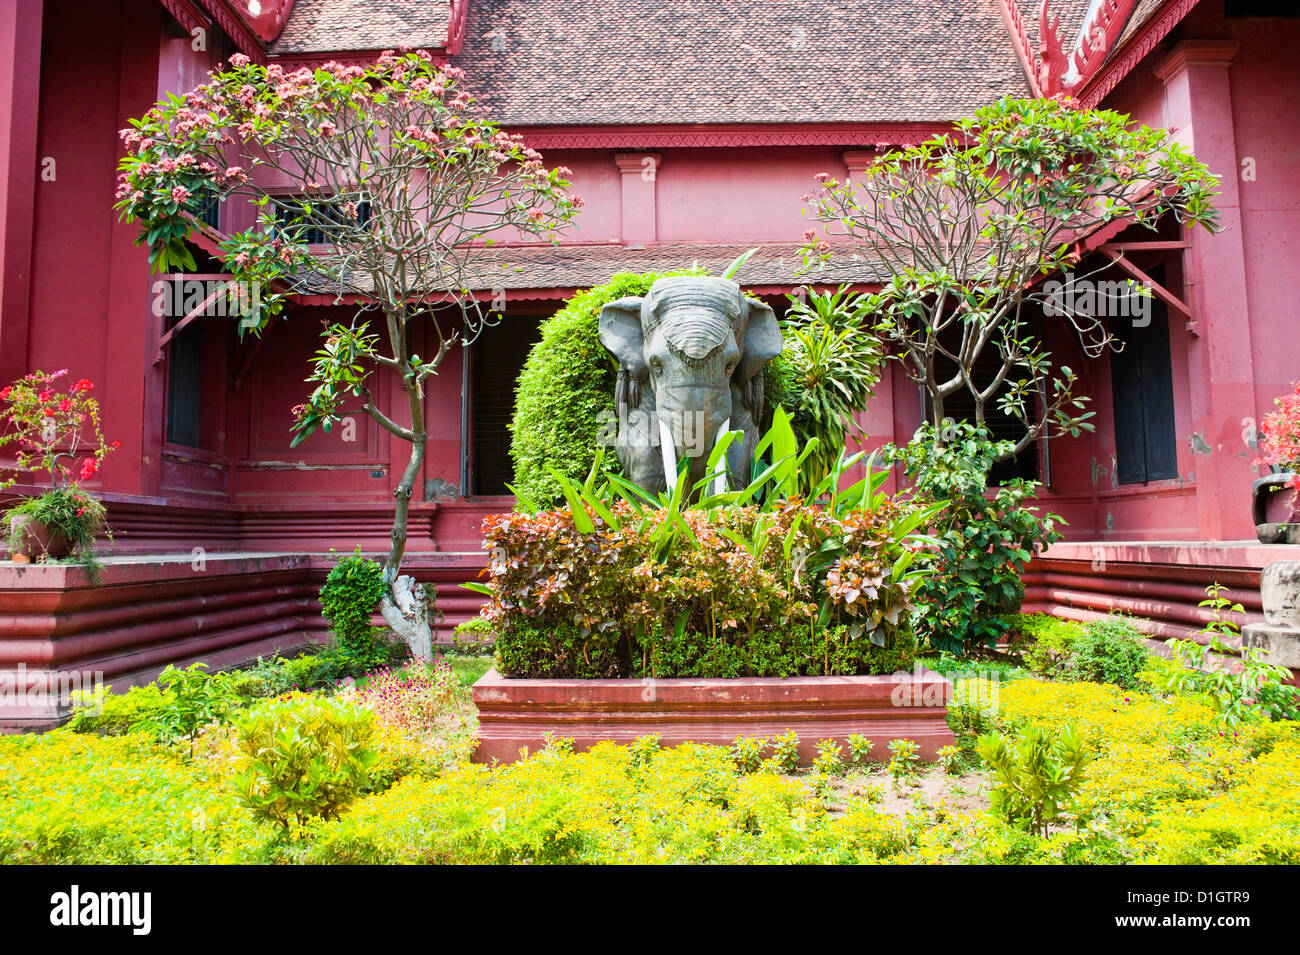 Statua di elefante al di fuori del Museo Nazionale della Cambogia, Phnom Penh, Cambogia, Indocina, Asia sud-orientale, Asia Foto Stock